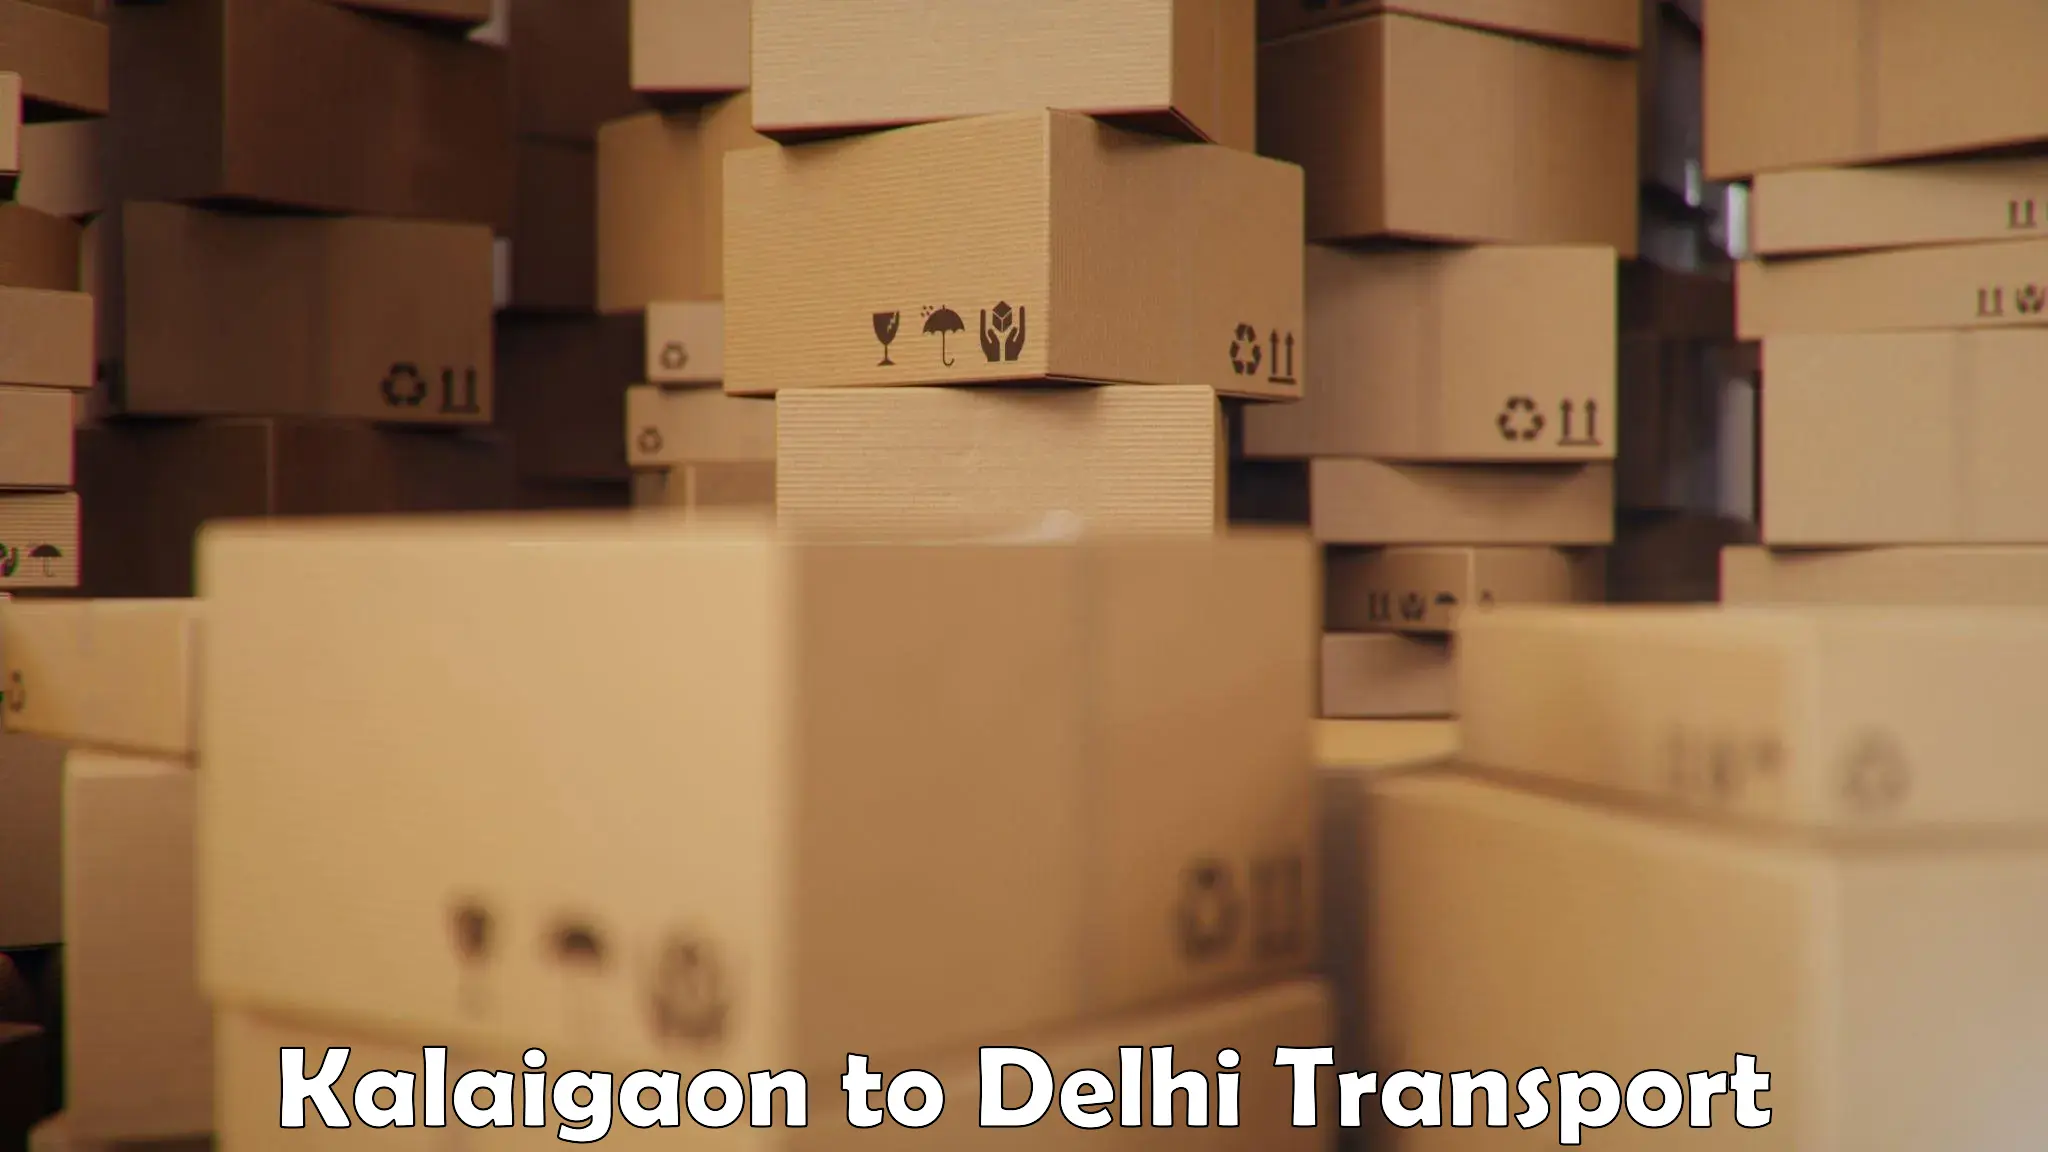 Domestic goods transportation services Kalaigaon to Sarojini Nagar